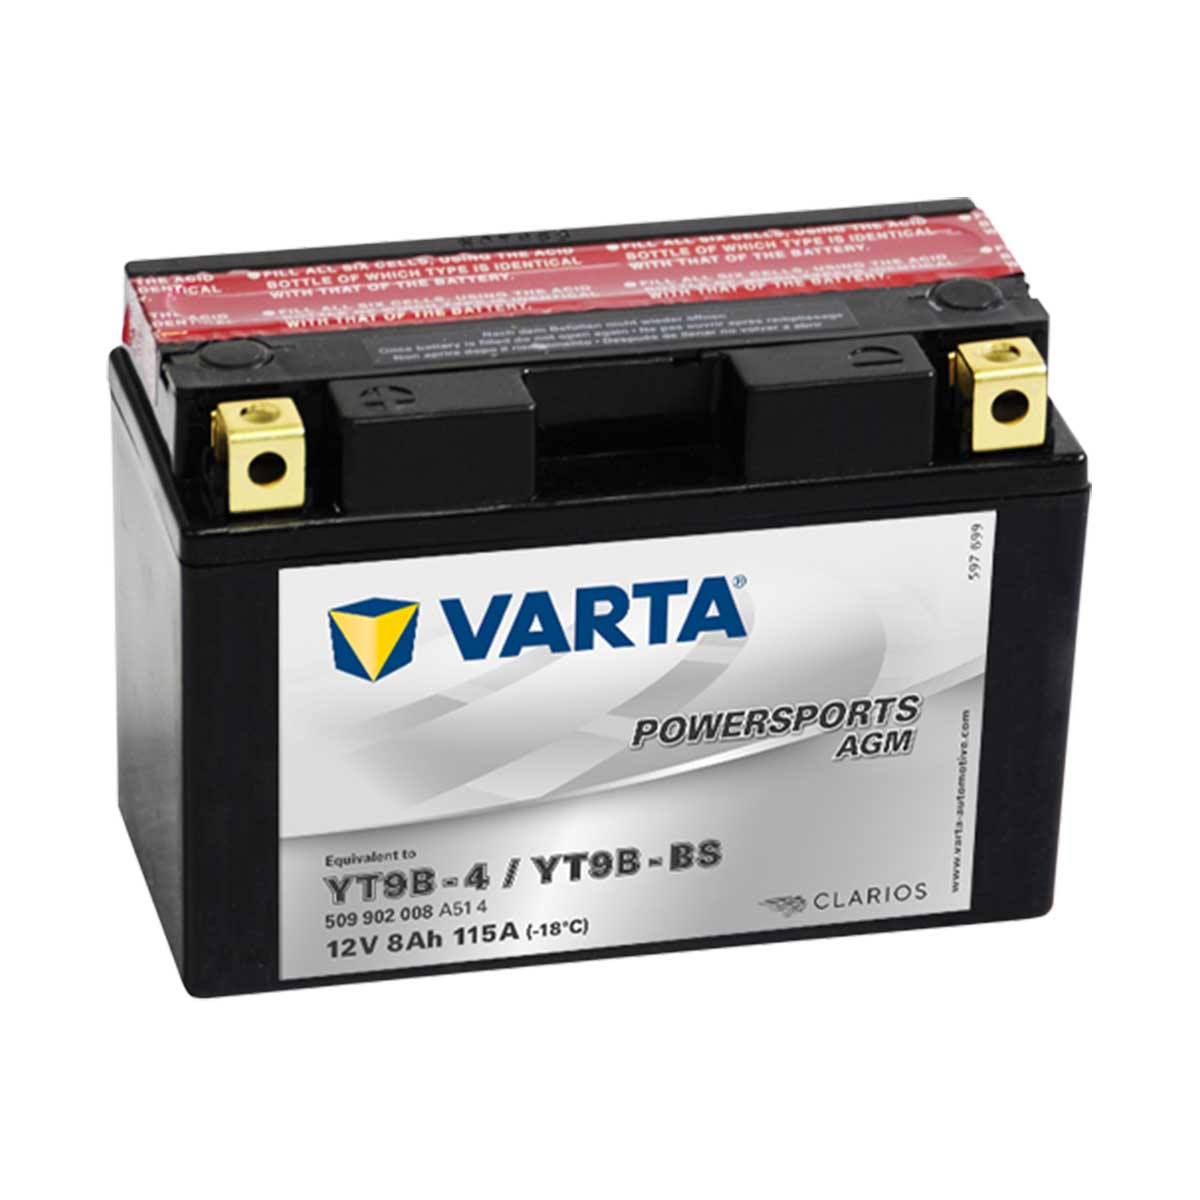 Varta Powersports AGM rafgeymir YT9B-BS (YT9B-4)